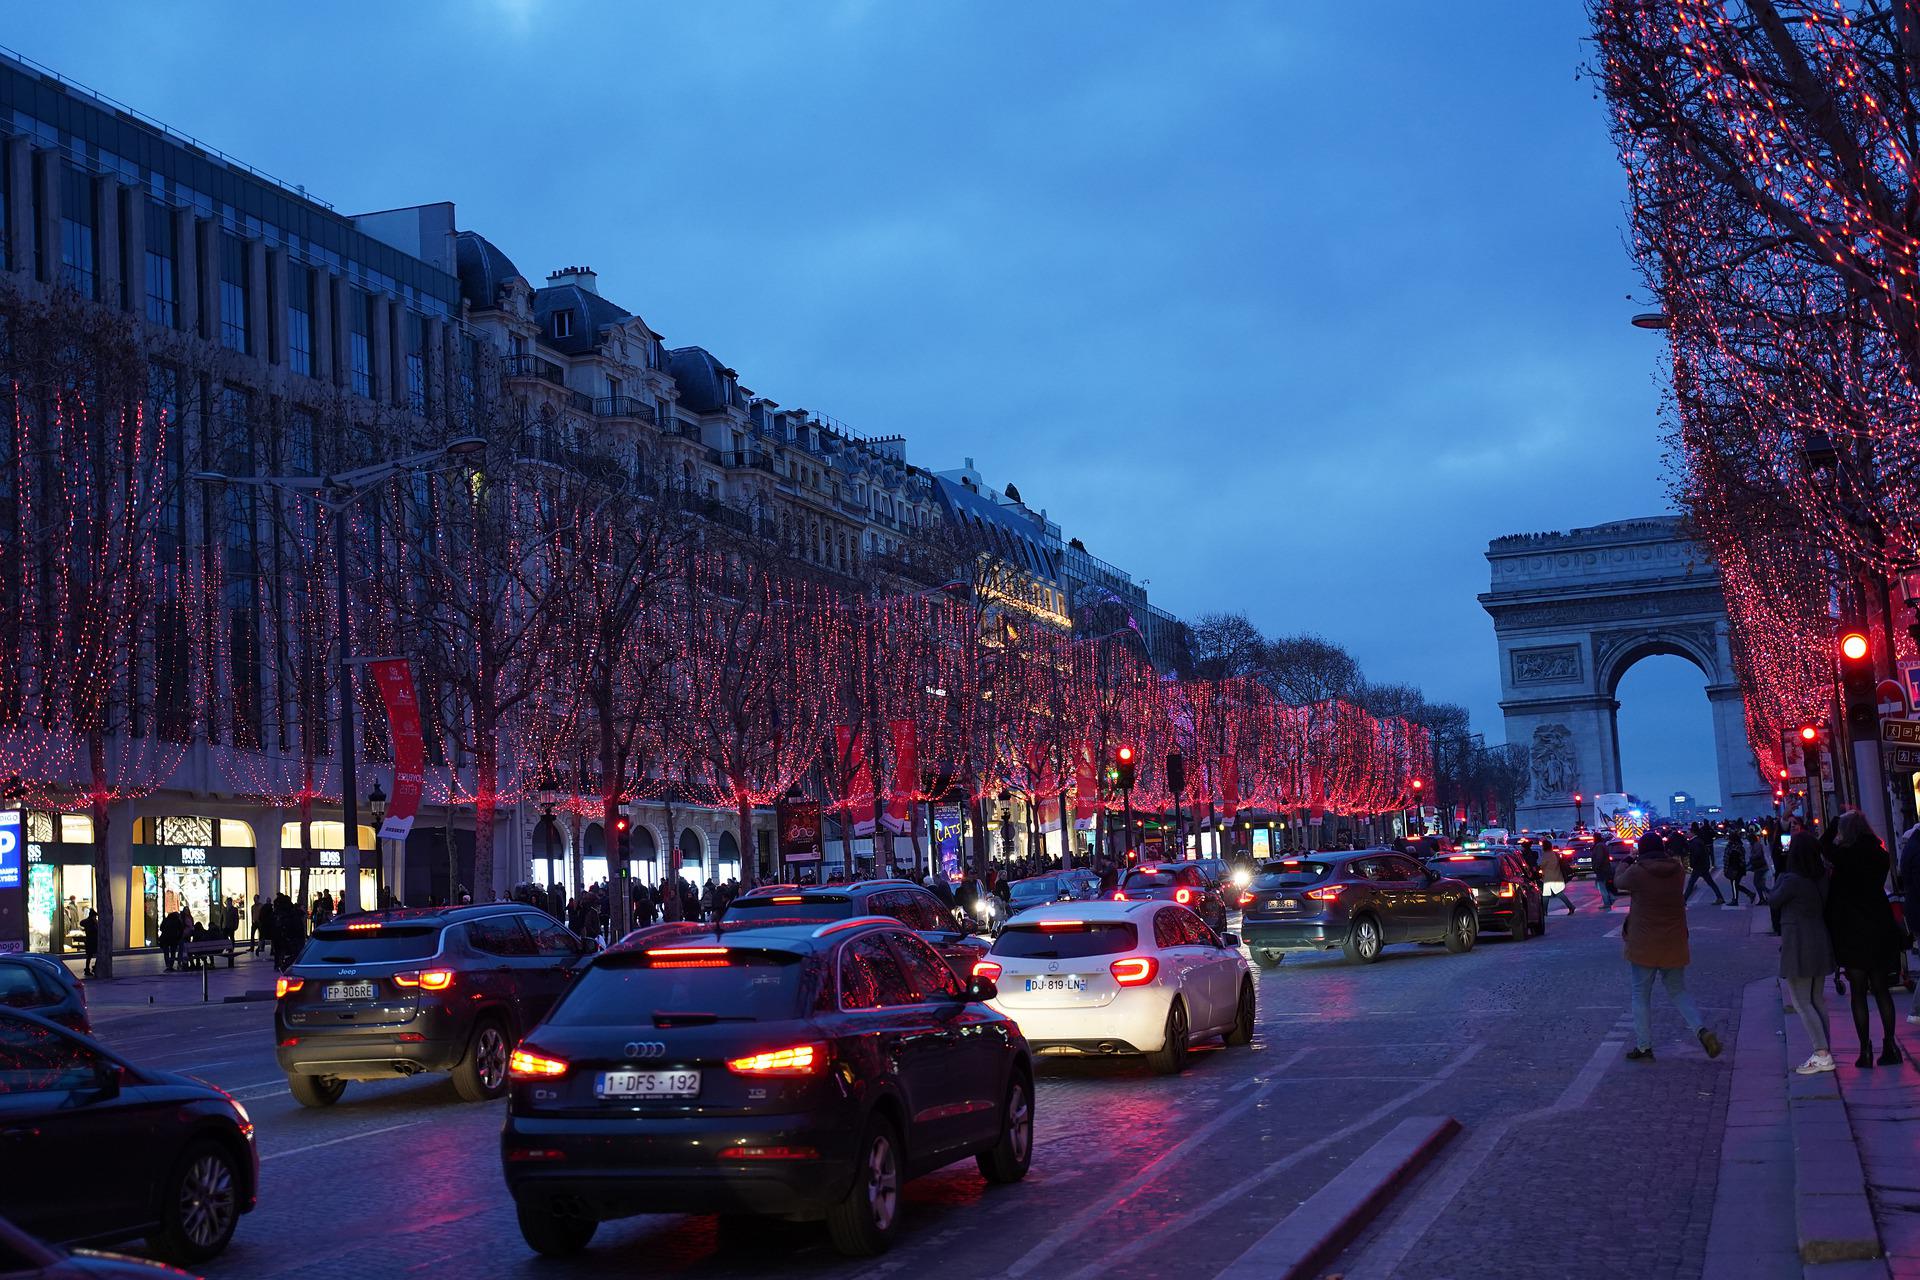 Uma volta pela Champs-Elysées, a avenida mais famosa do mundo